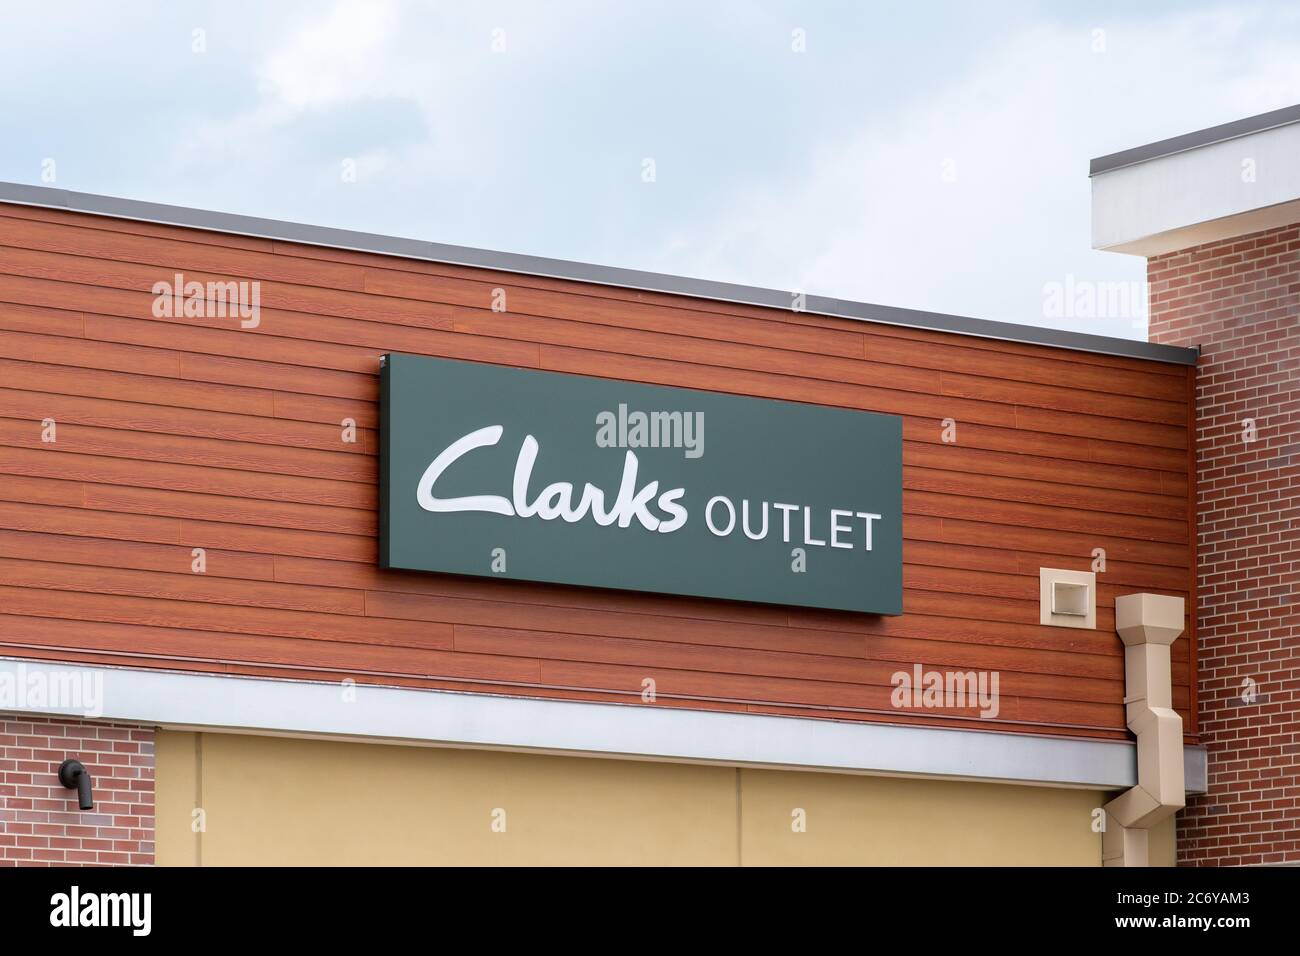 clarks outlet returns